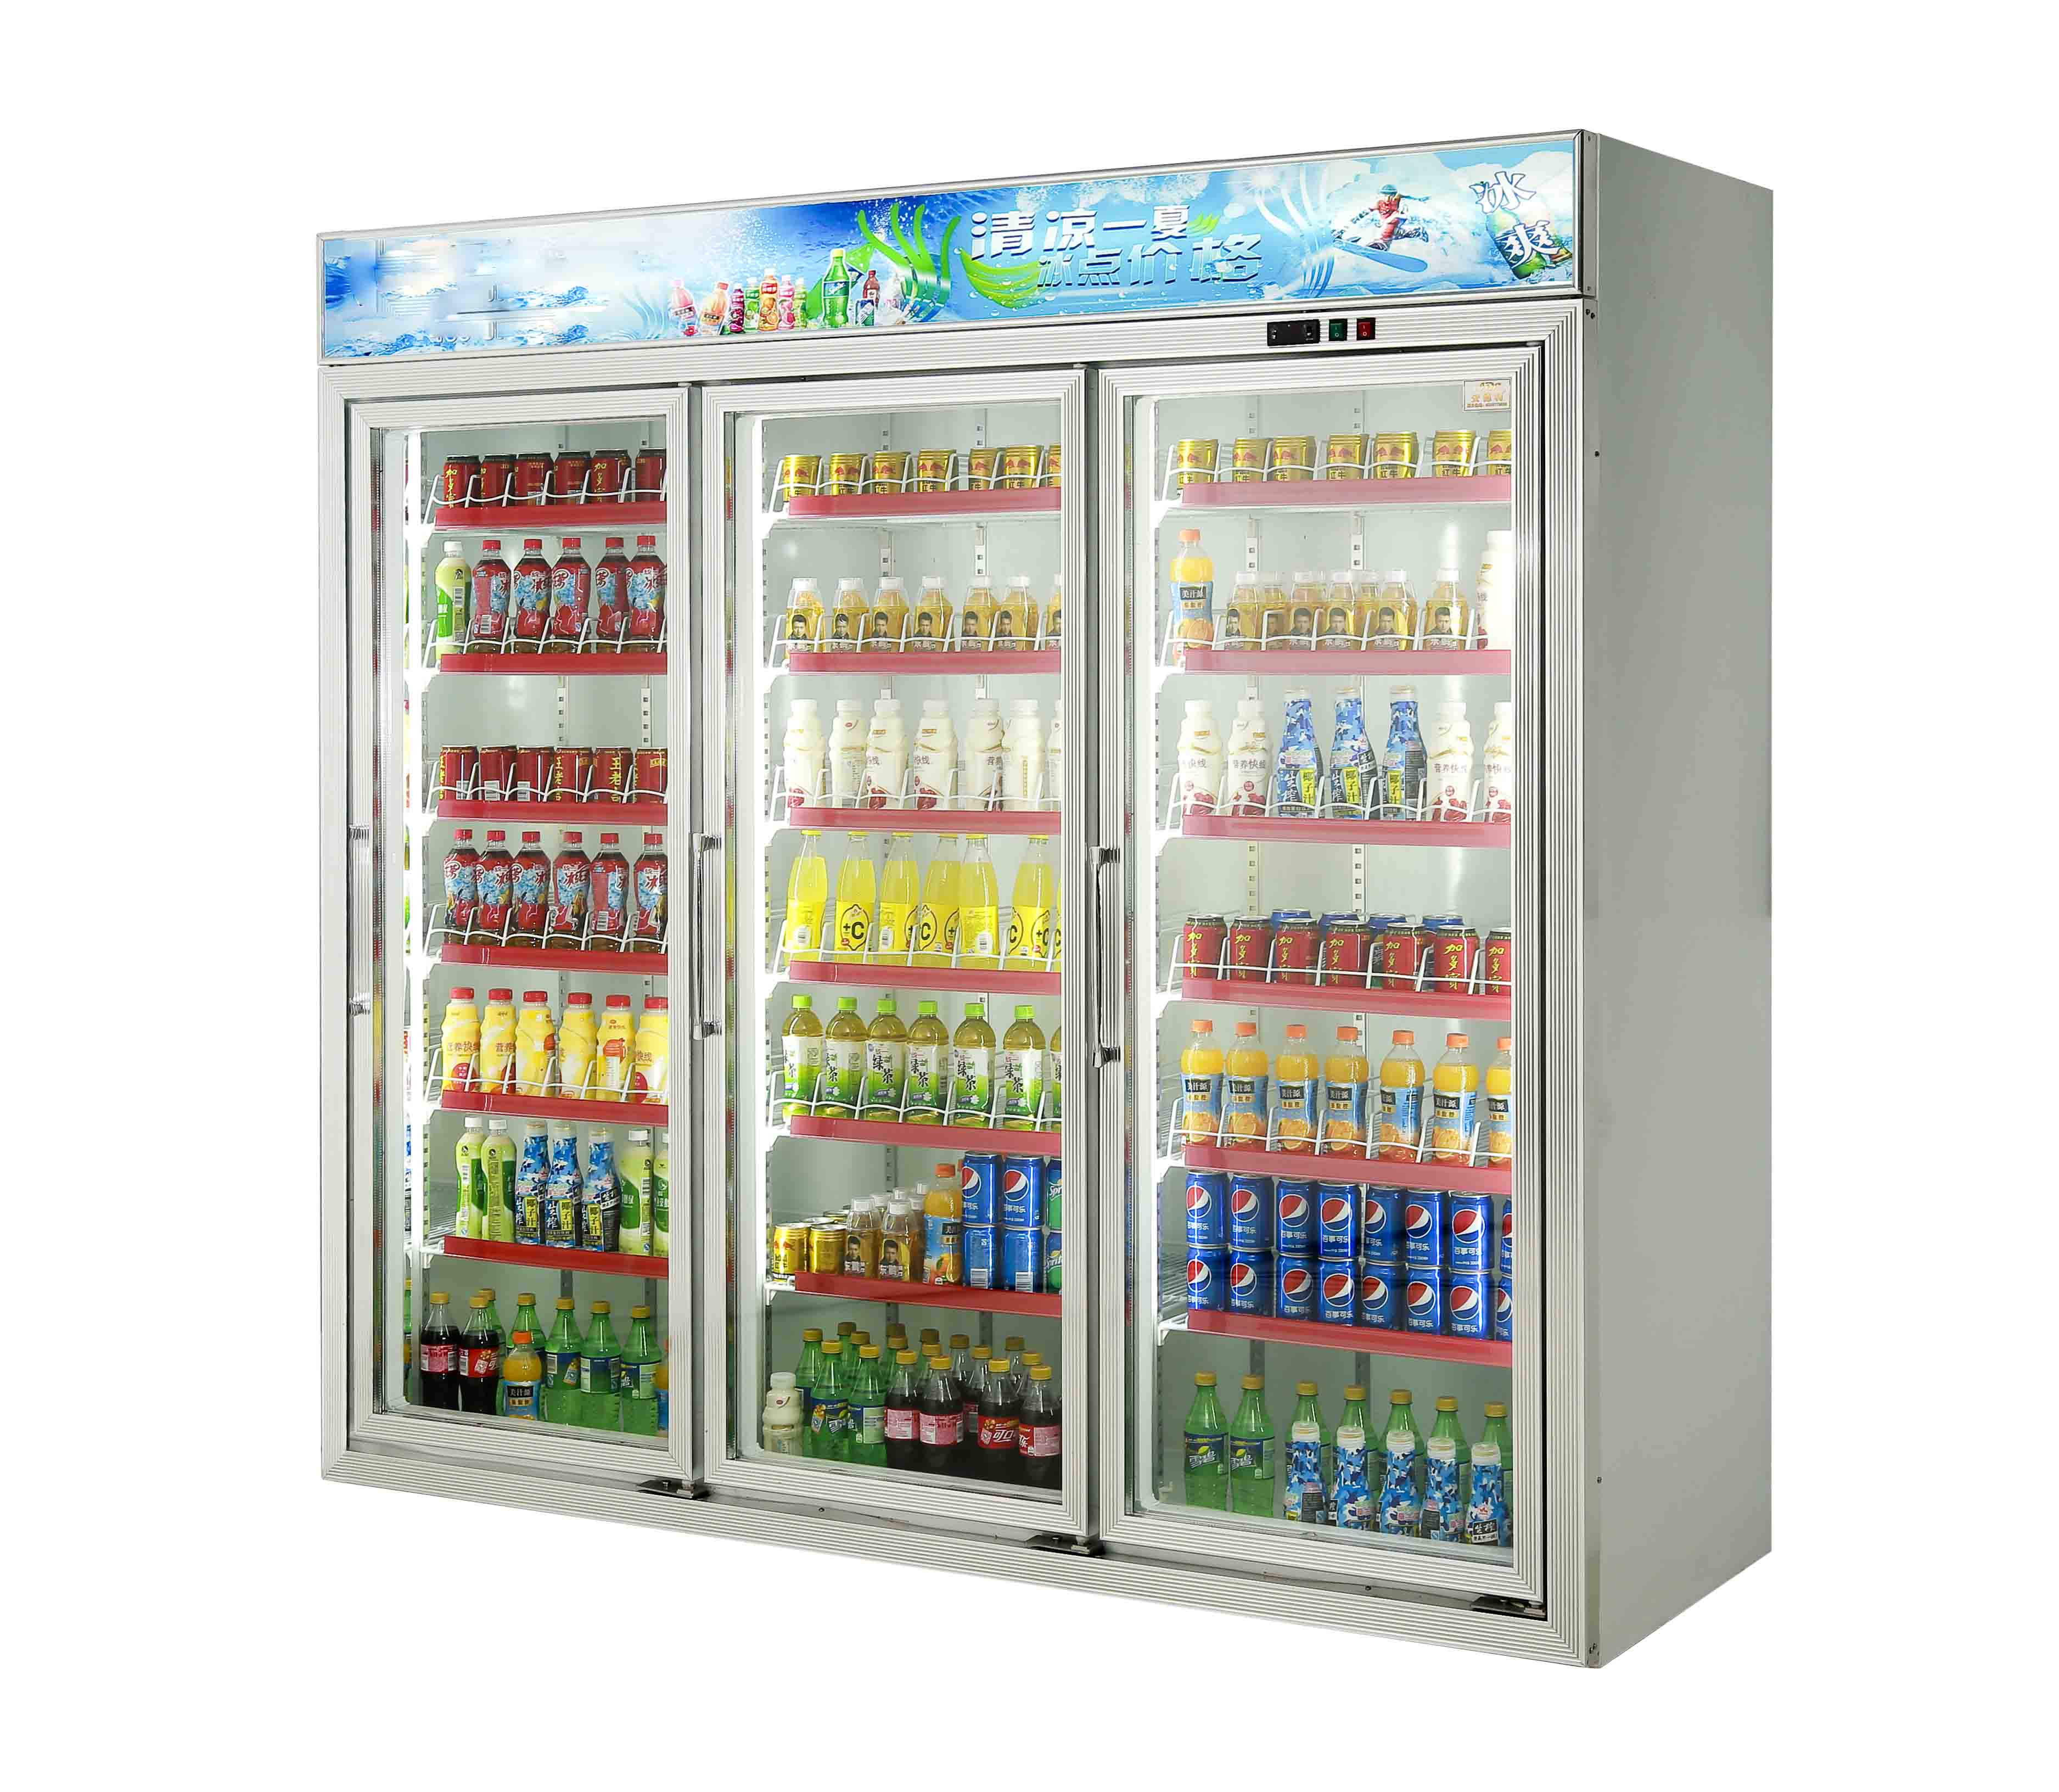 供应广州三门超市冰柜 分体饮料柜 广州超市冰柜图片